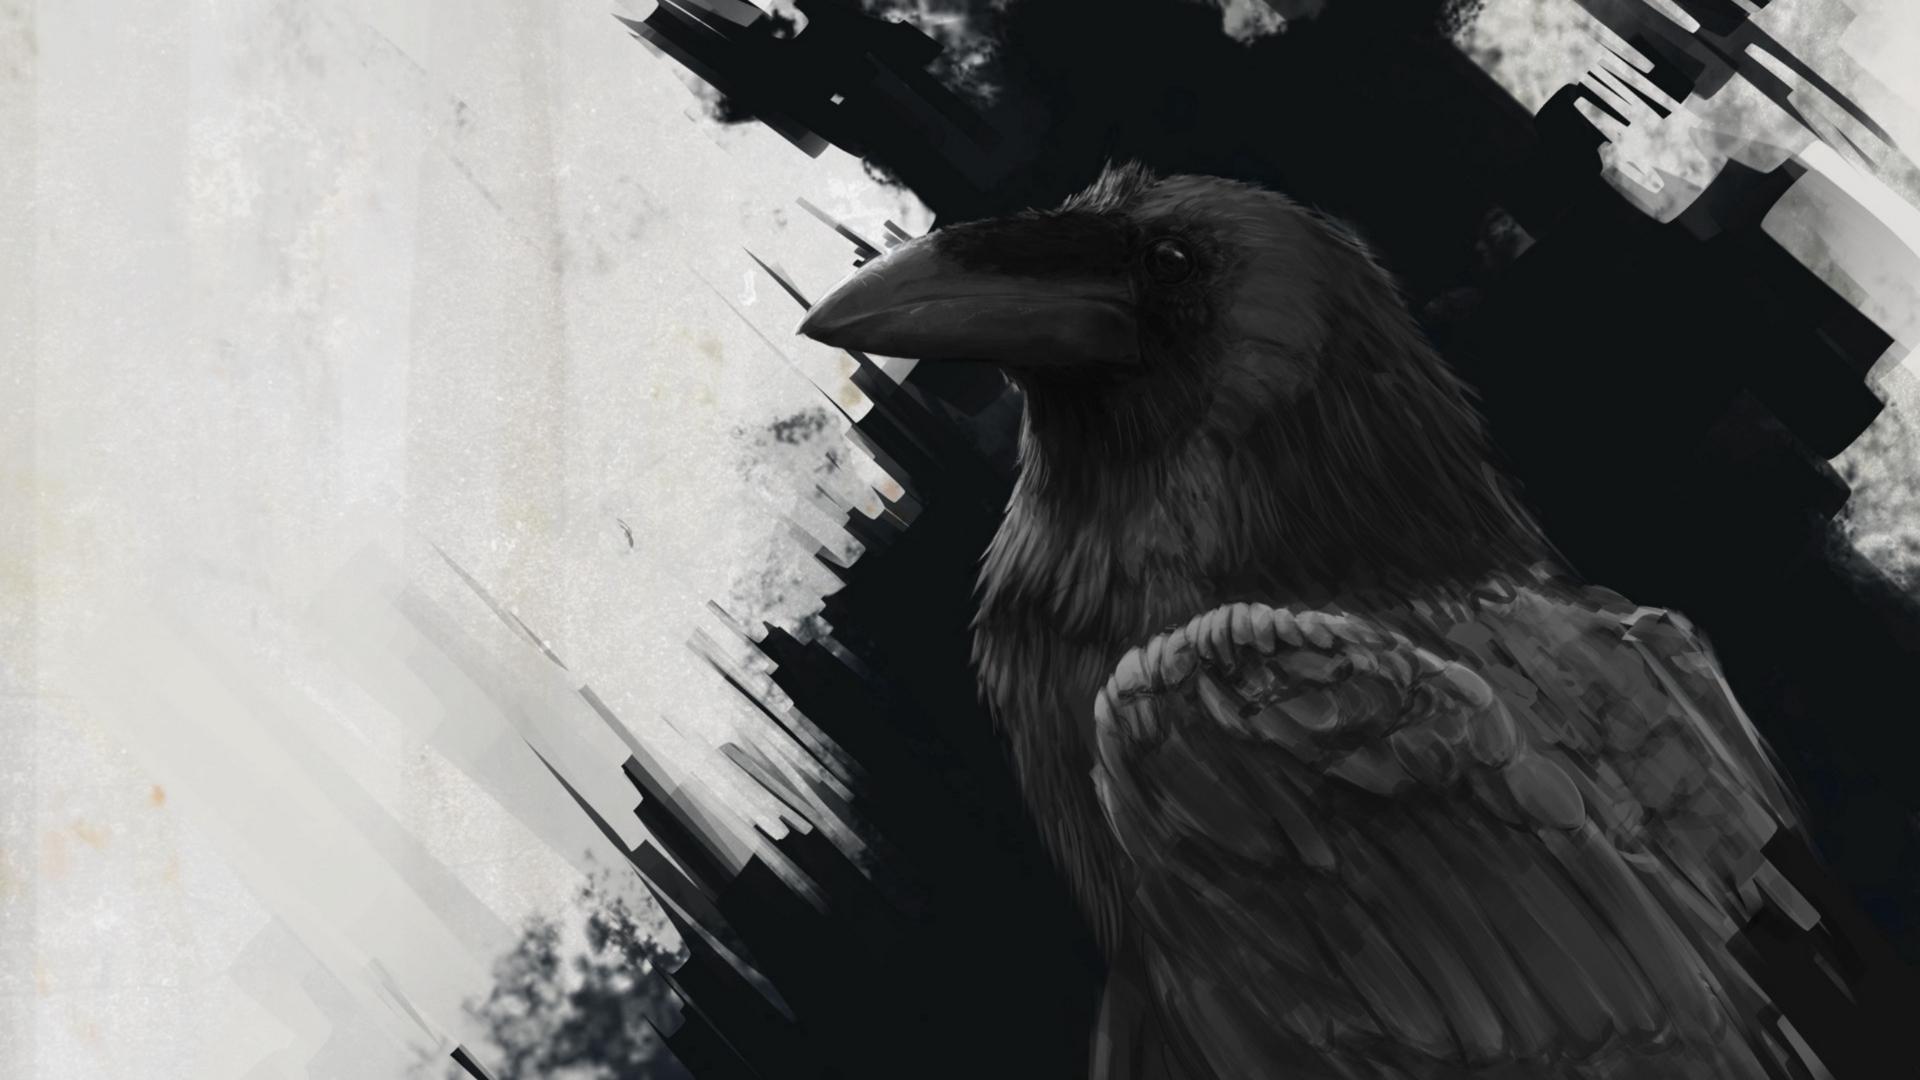 Download wallpaper 1920x1080 raven, bird, art, black, lines